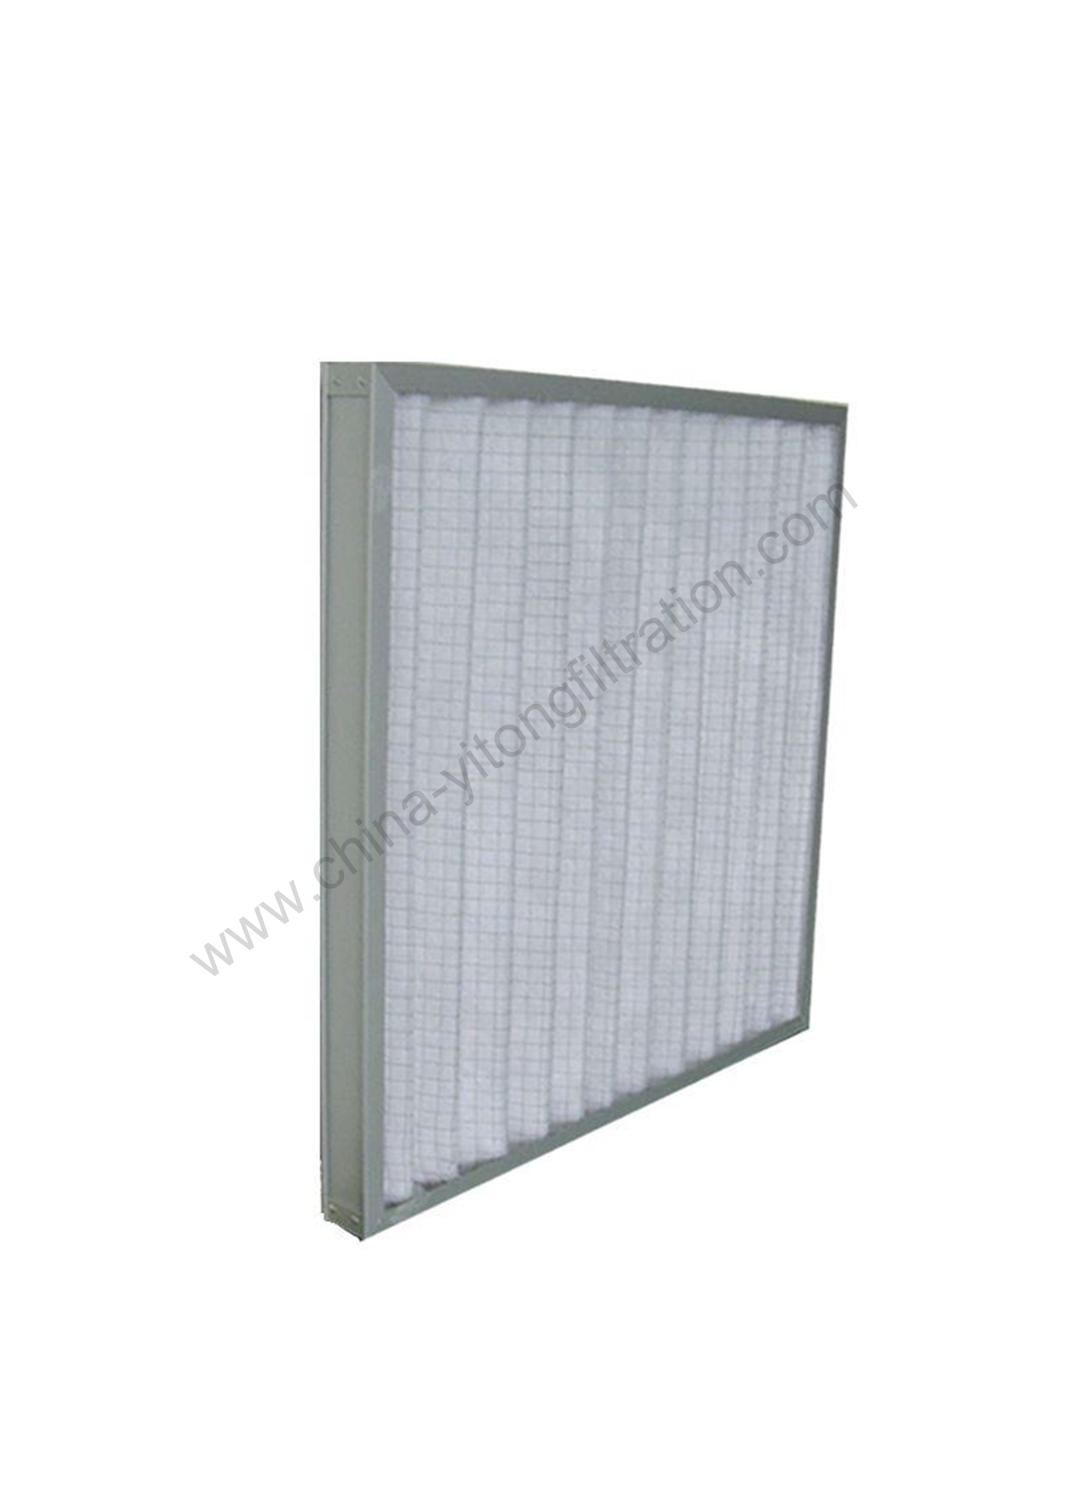 Medium Efficiency Panel Air Filter